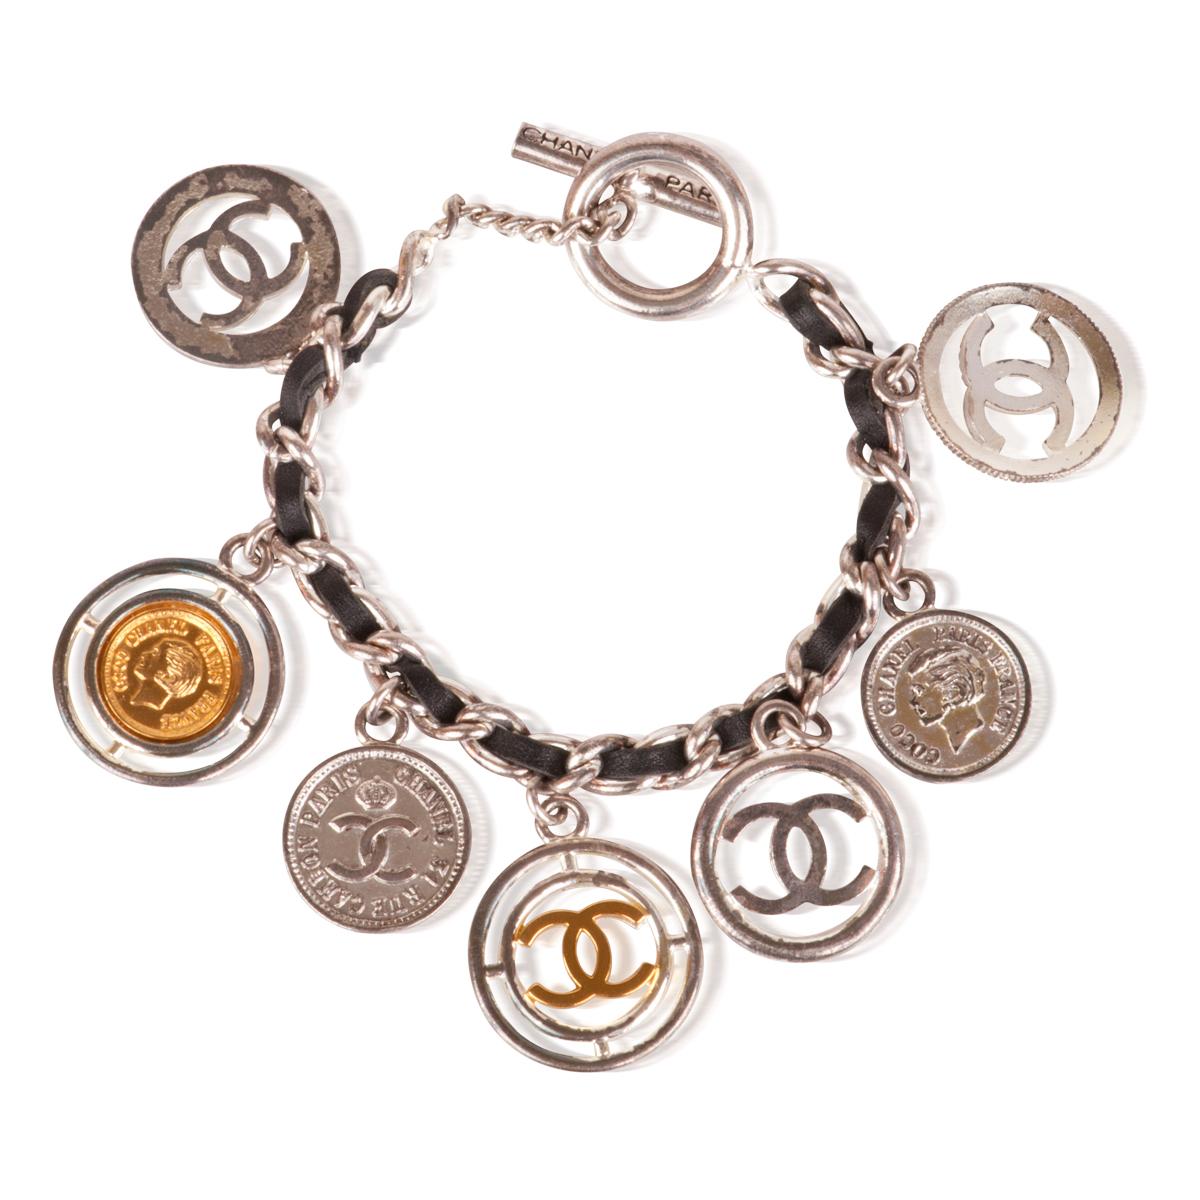 Gebrauchte Vintage Chanel Silber-Ton-Leder CC-Logo Münze Charme Armband, hergestellt in Frankreich, 1997. 

Das Armband ist aus der Chanel Spring 1997 Kollektion. Sie ist sehr klassisch, in gutem gebrauchten Zustand und eignet sich hervorragend für